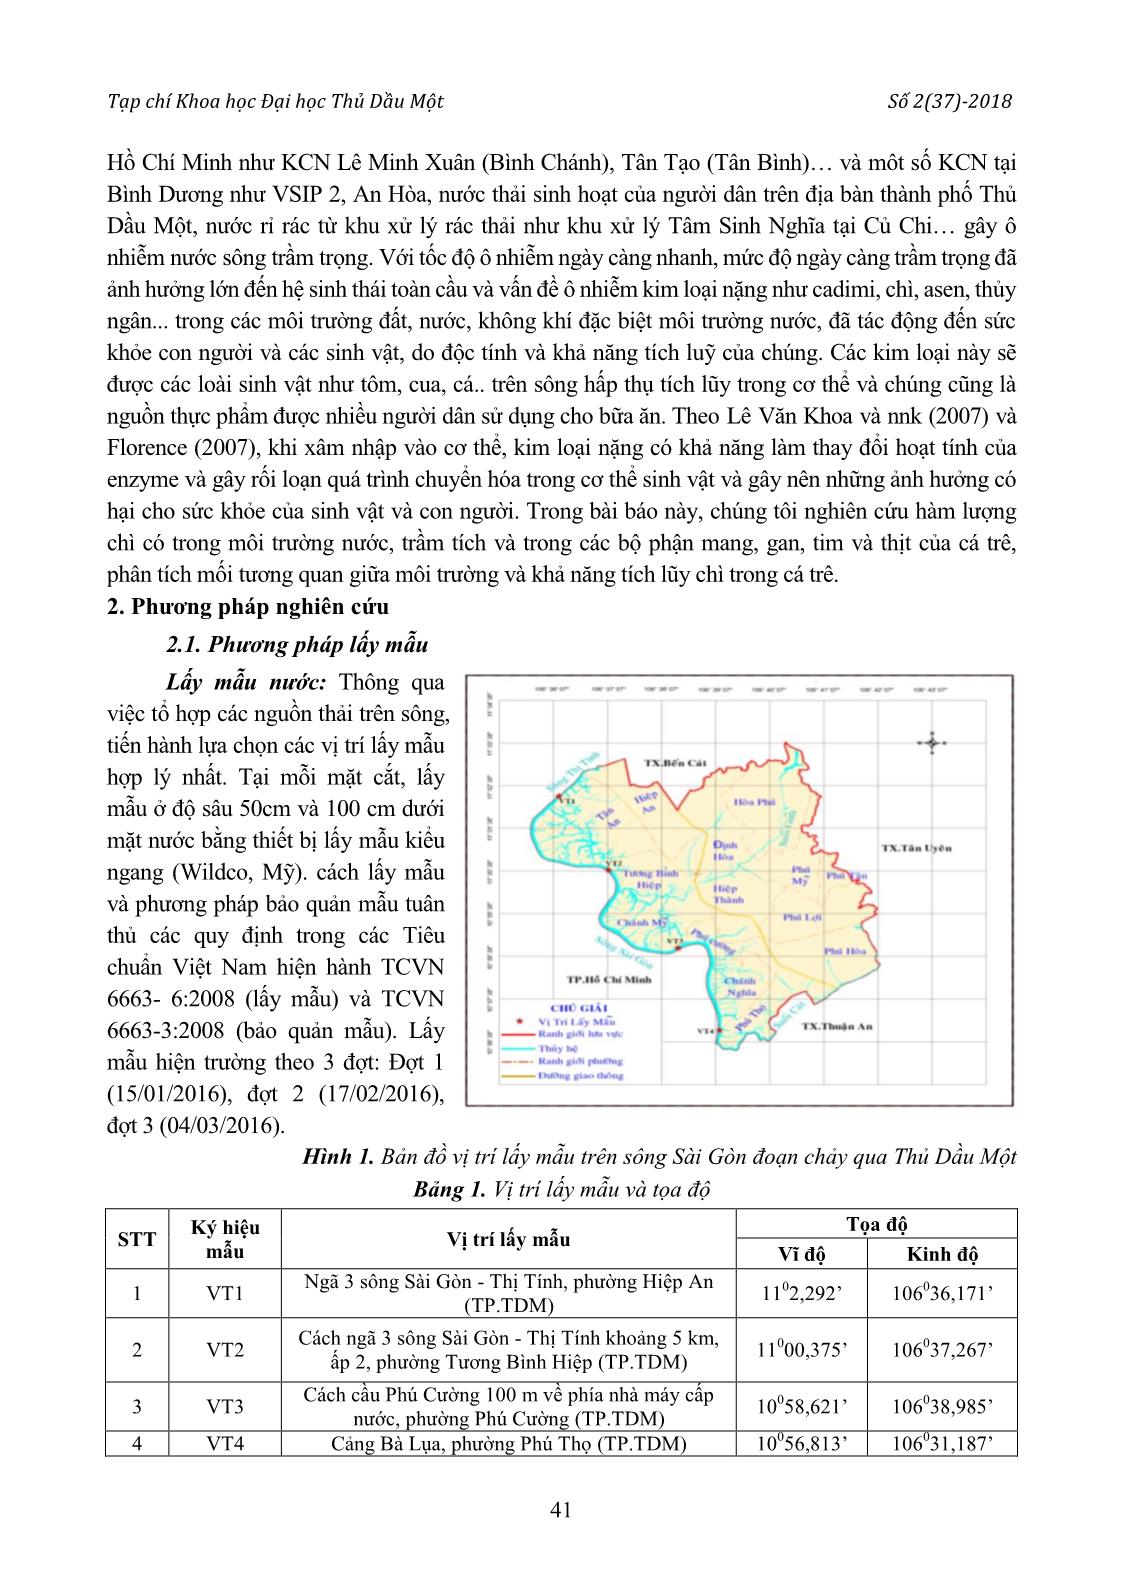 Hàm lượng chì trong trầm tích, nước sông và trong loài cá trê trên sông Sài Gòn đoạn chảy qua thành phố Thủ Dầu Một trang 2